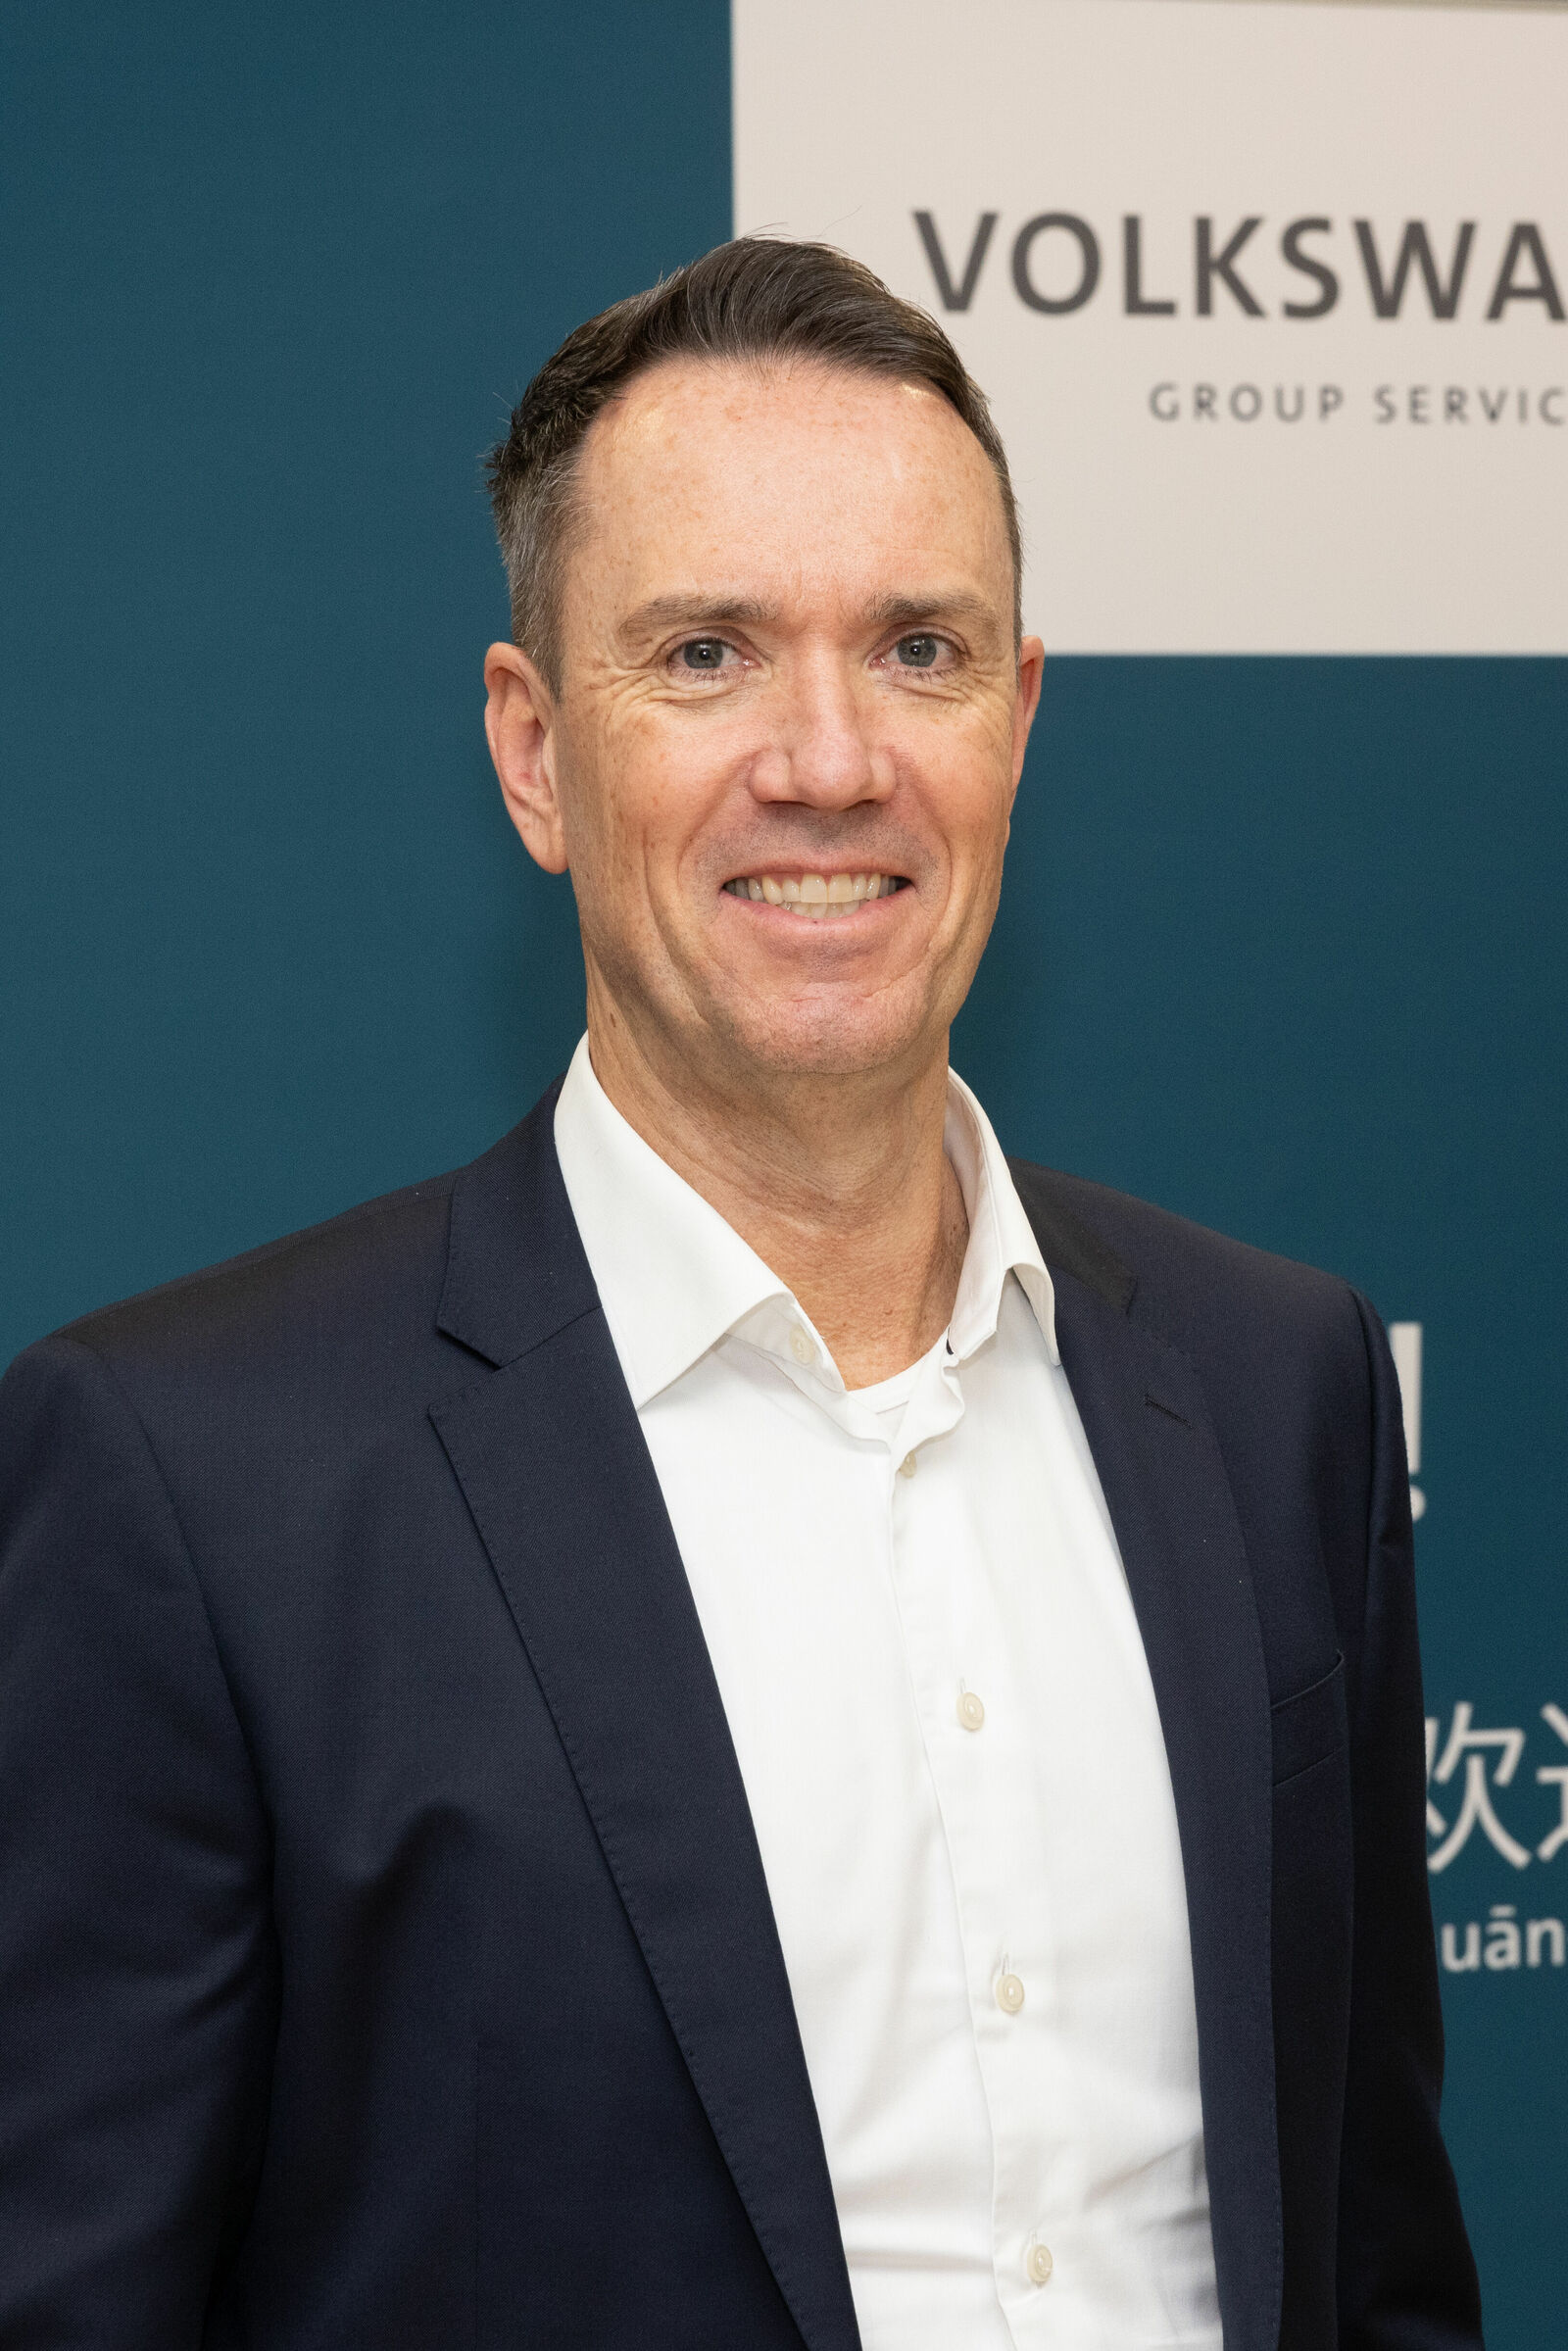 Thorsten Falk, Ehemaliges Mitglied der Geschäftsführung der Volkswagen Group Services GmbH